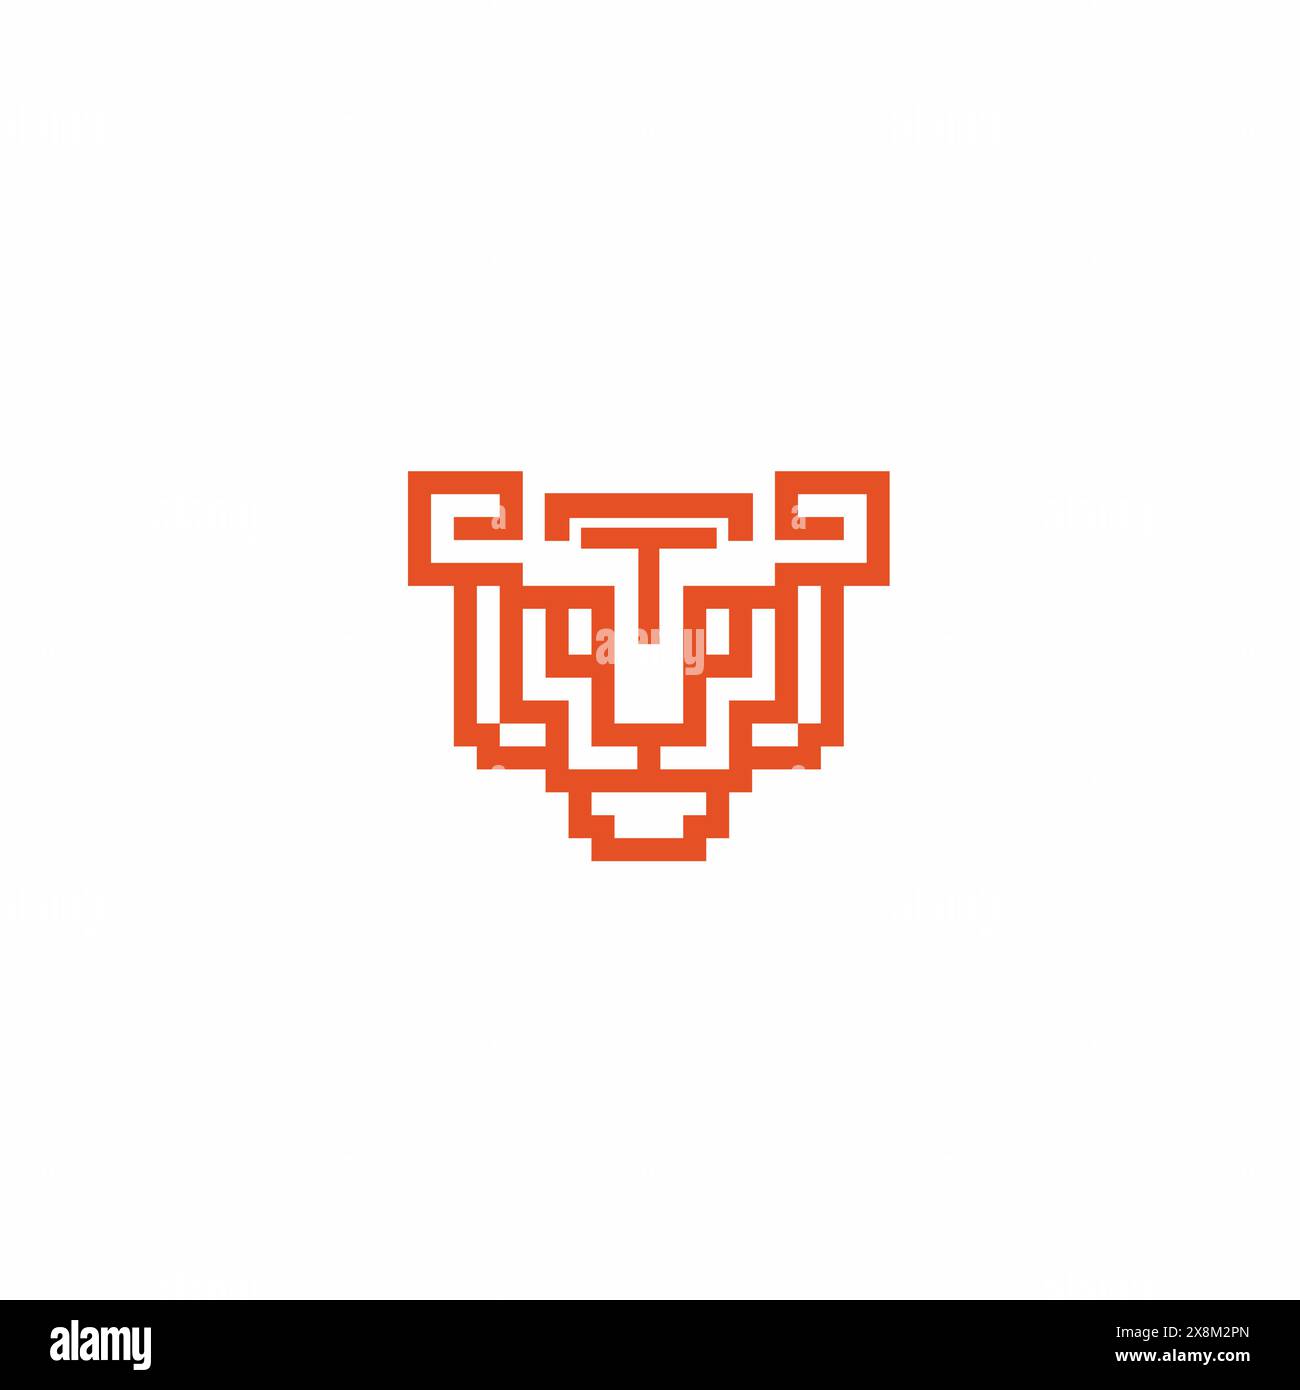 Logo Lion, logo d'attaque Lion, utilisable pour la conception de logo de marque, d'entreprise et d'équipe sportive, illustration vectorielle, illustration vectorielle Illustration de Vecteur